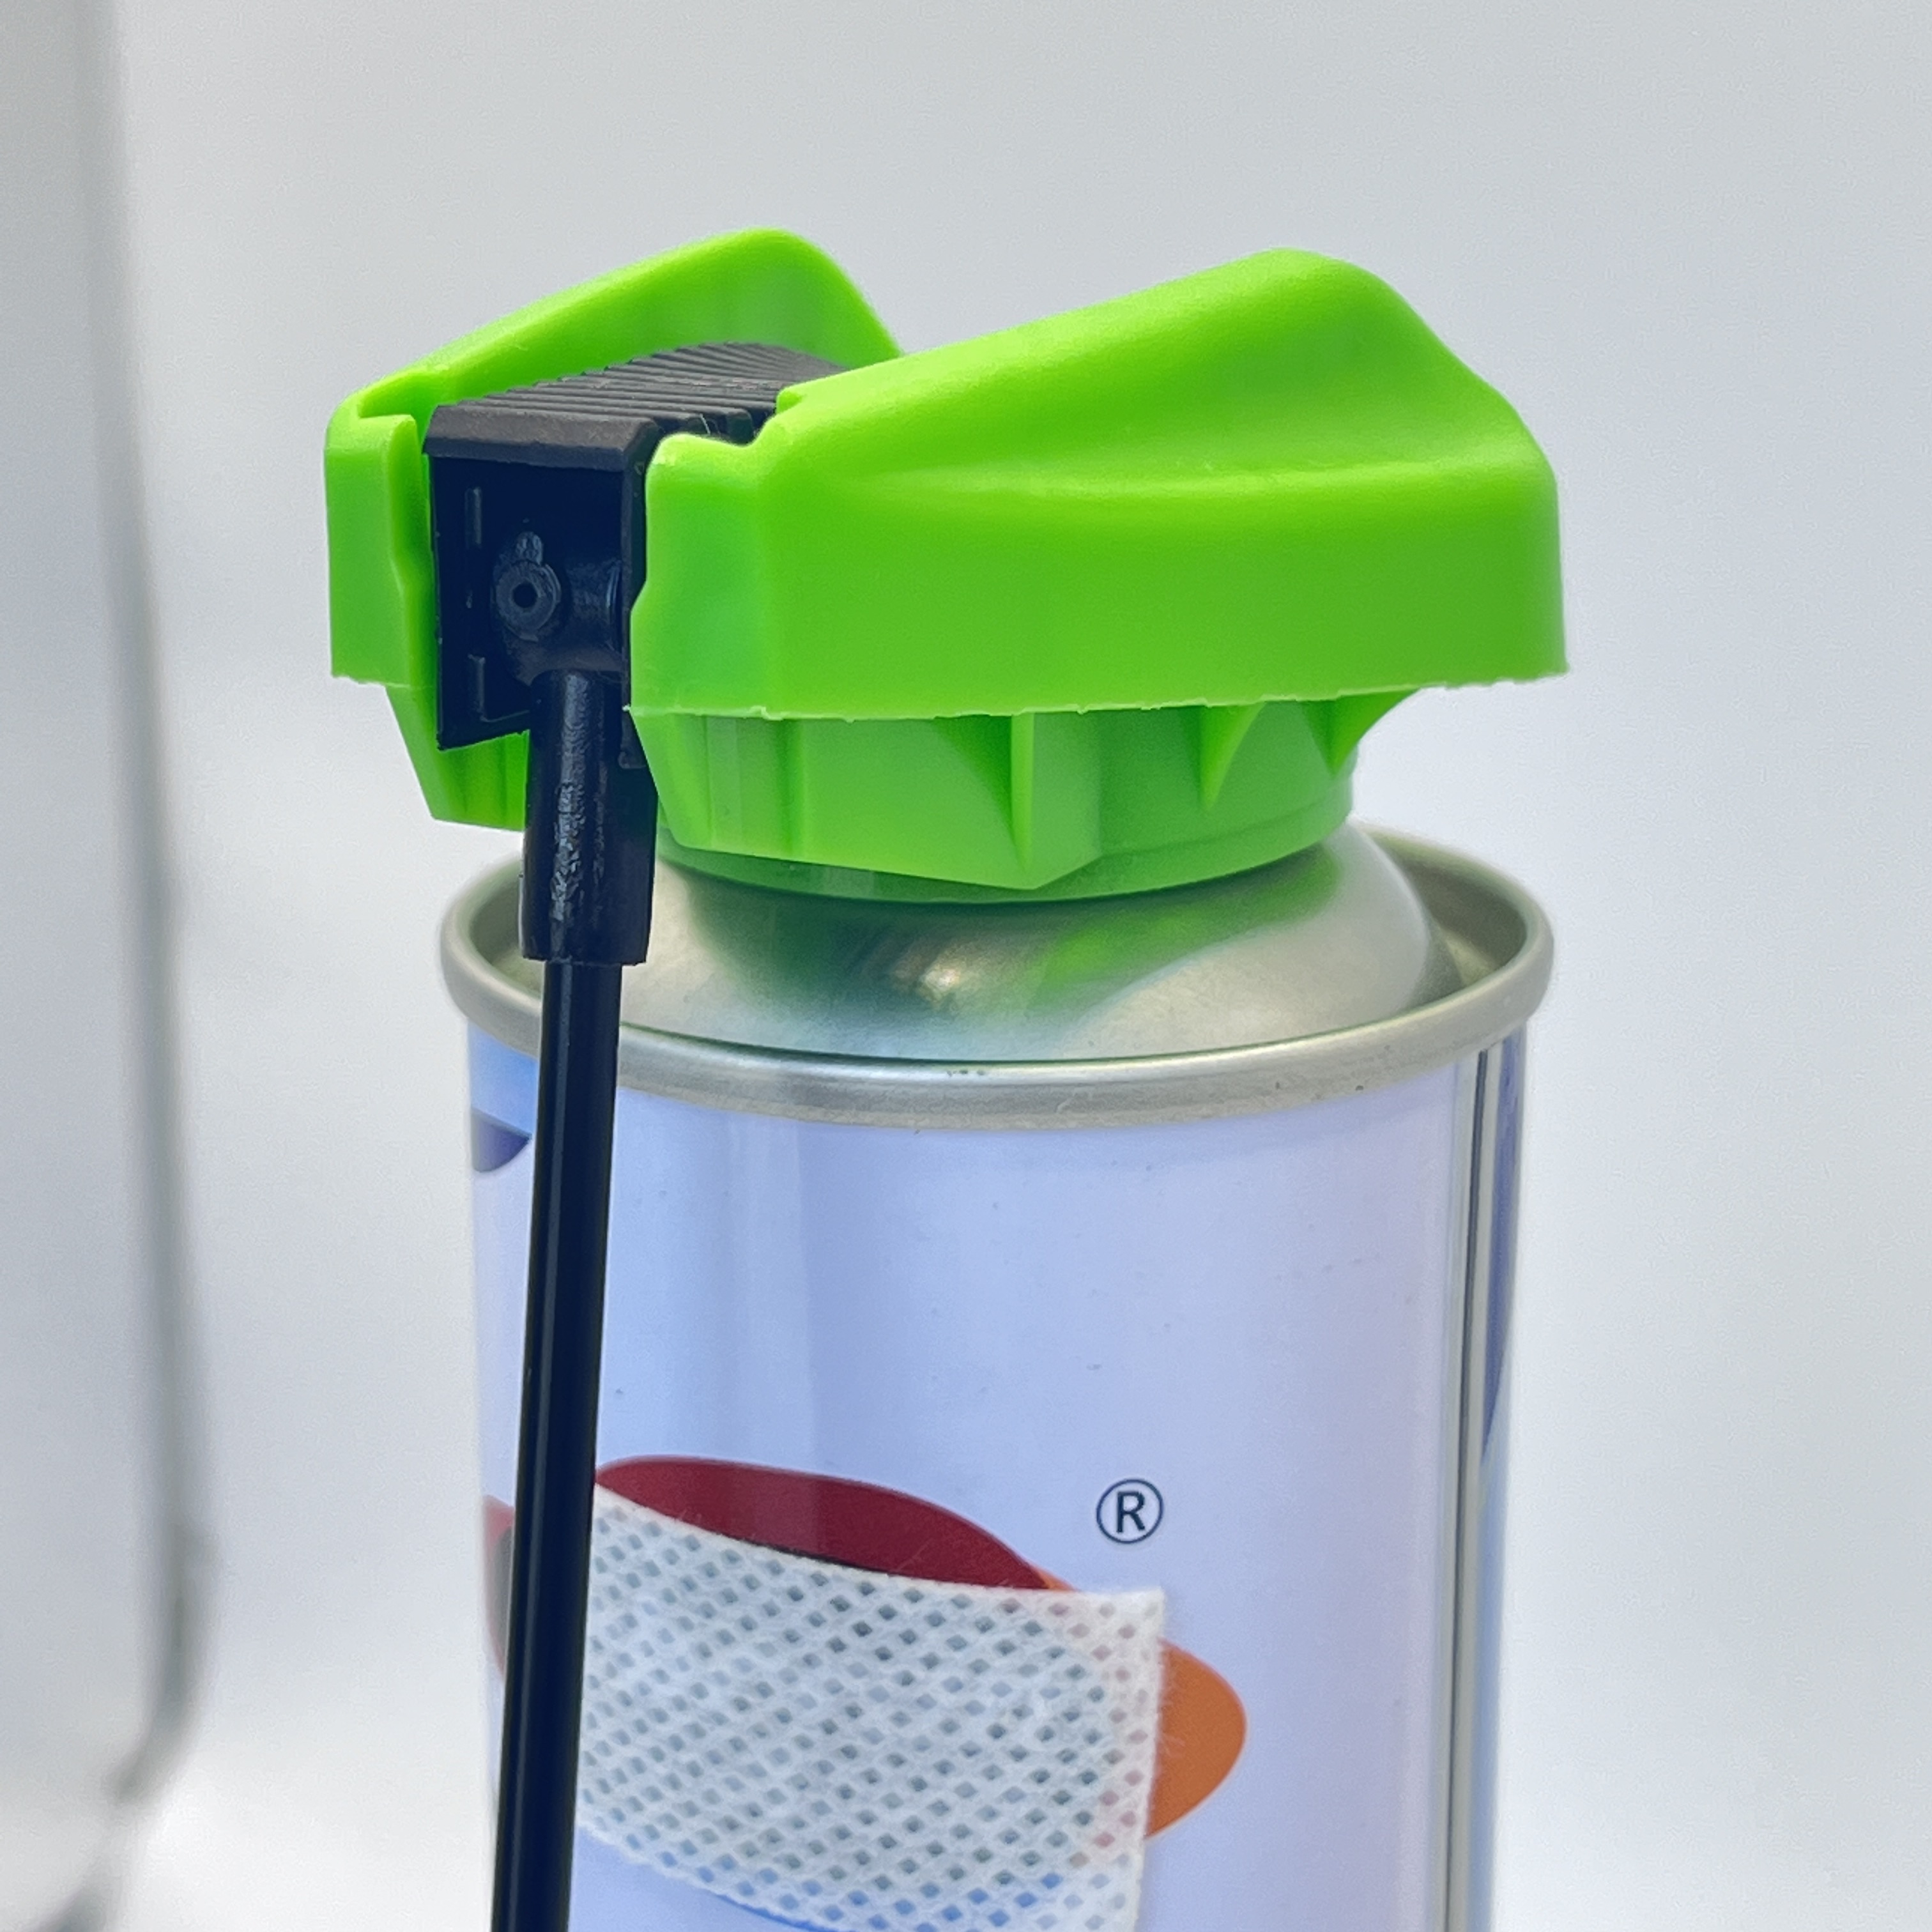 Vielseitige Abzugskappe mit Schlauch – praktische Dosierlösung für Flüssigkeiten und Chemikalien